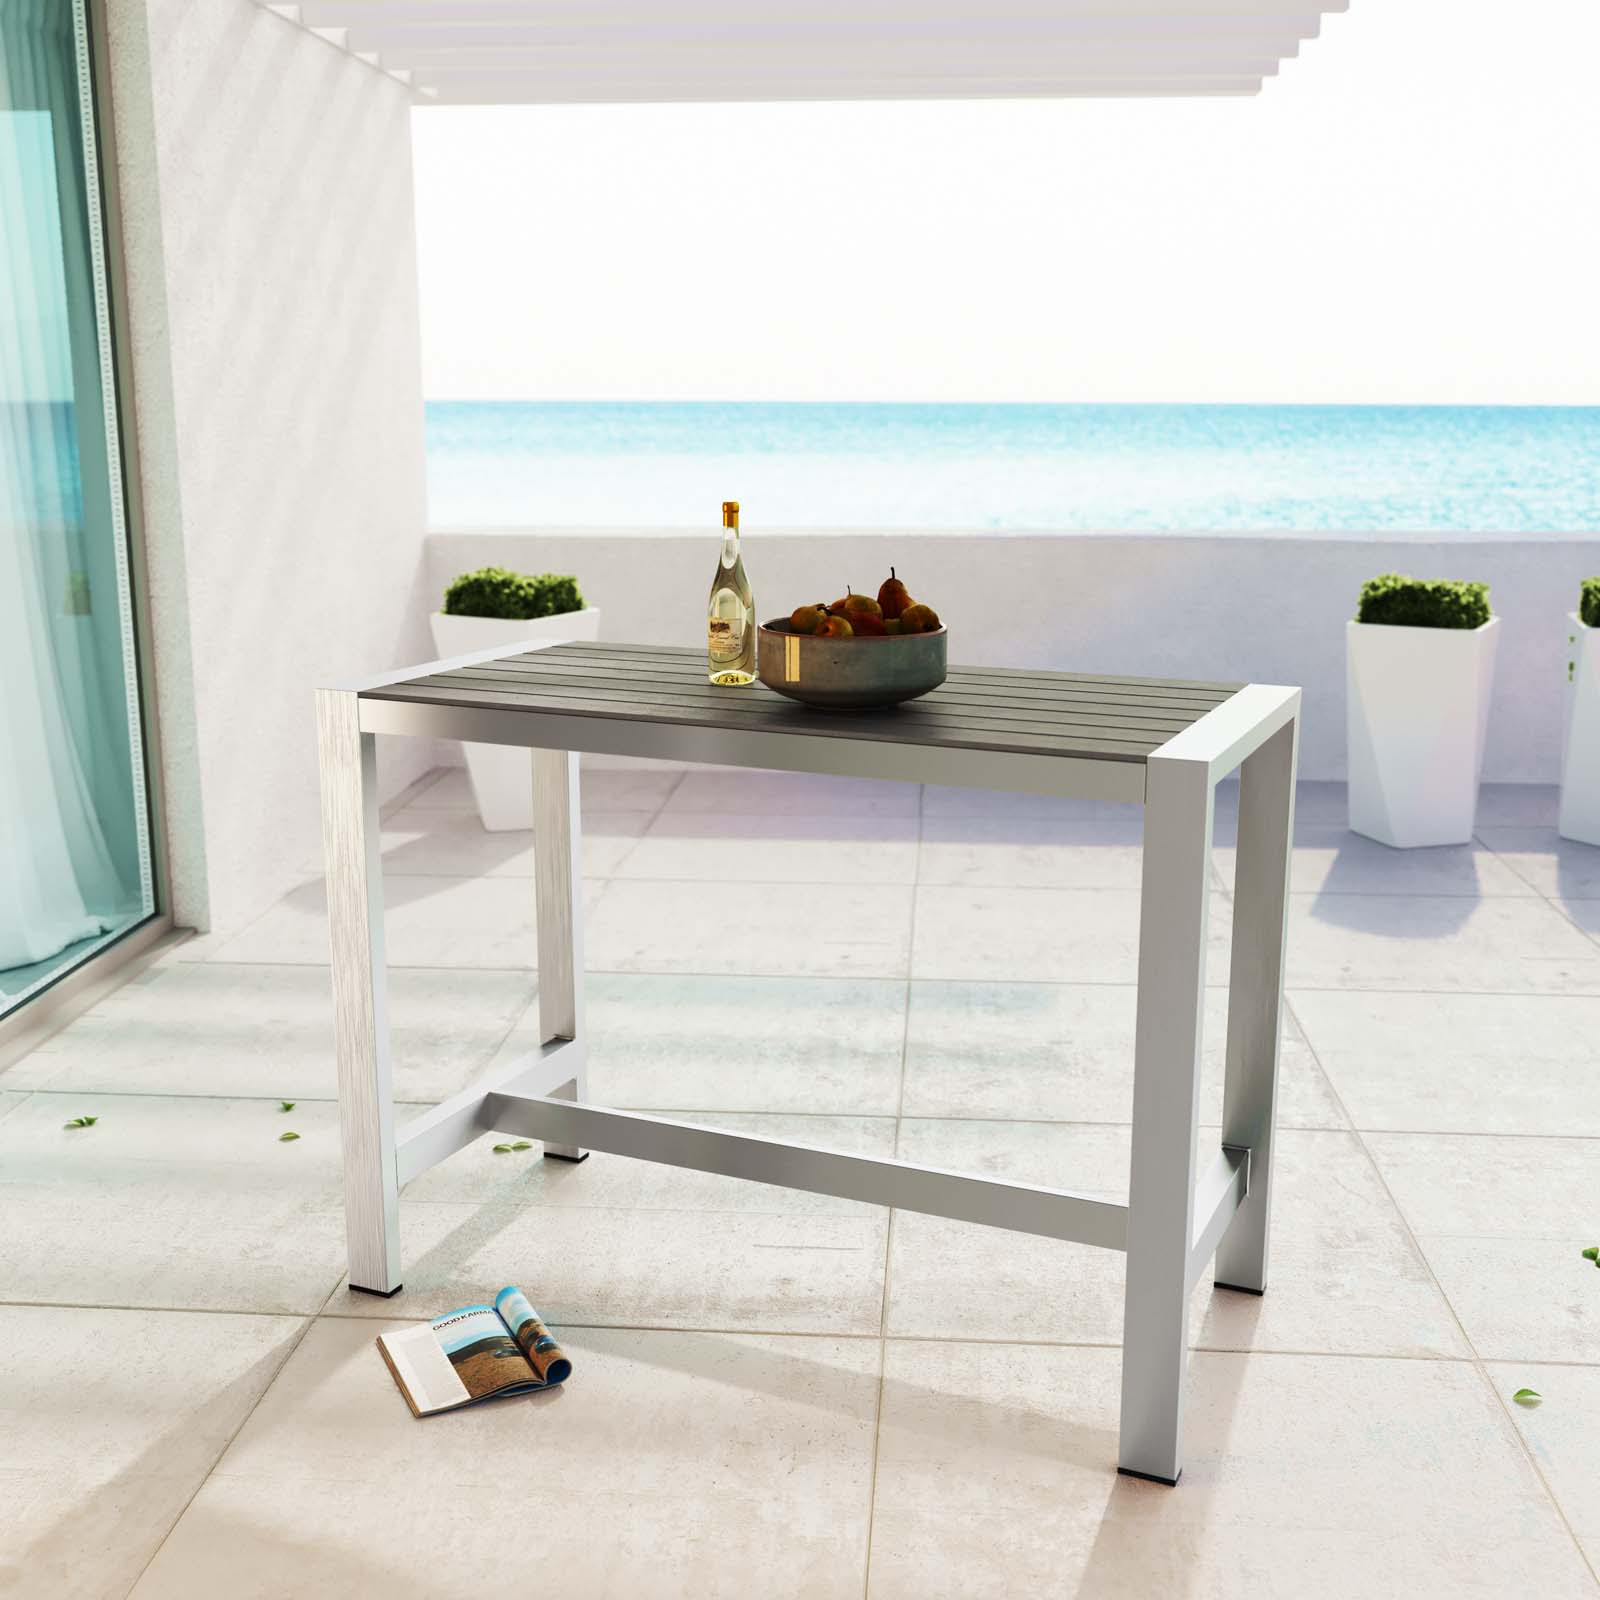 Modern Contemporary Urban Design Outdoor Patio Balcony Rectangle Bar Table, Grey Gray, Aluminum - image 2 of 4